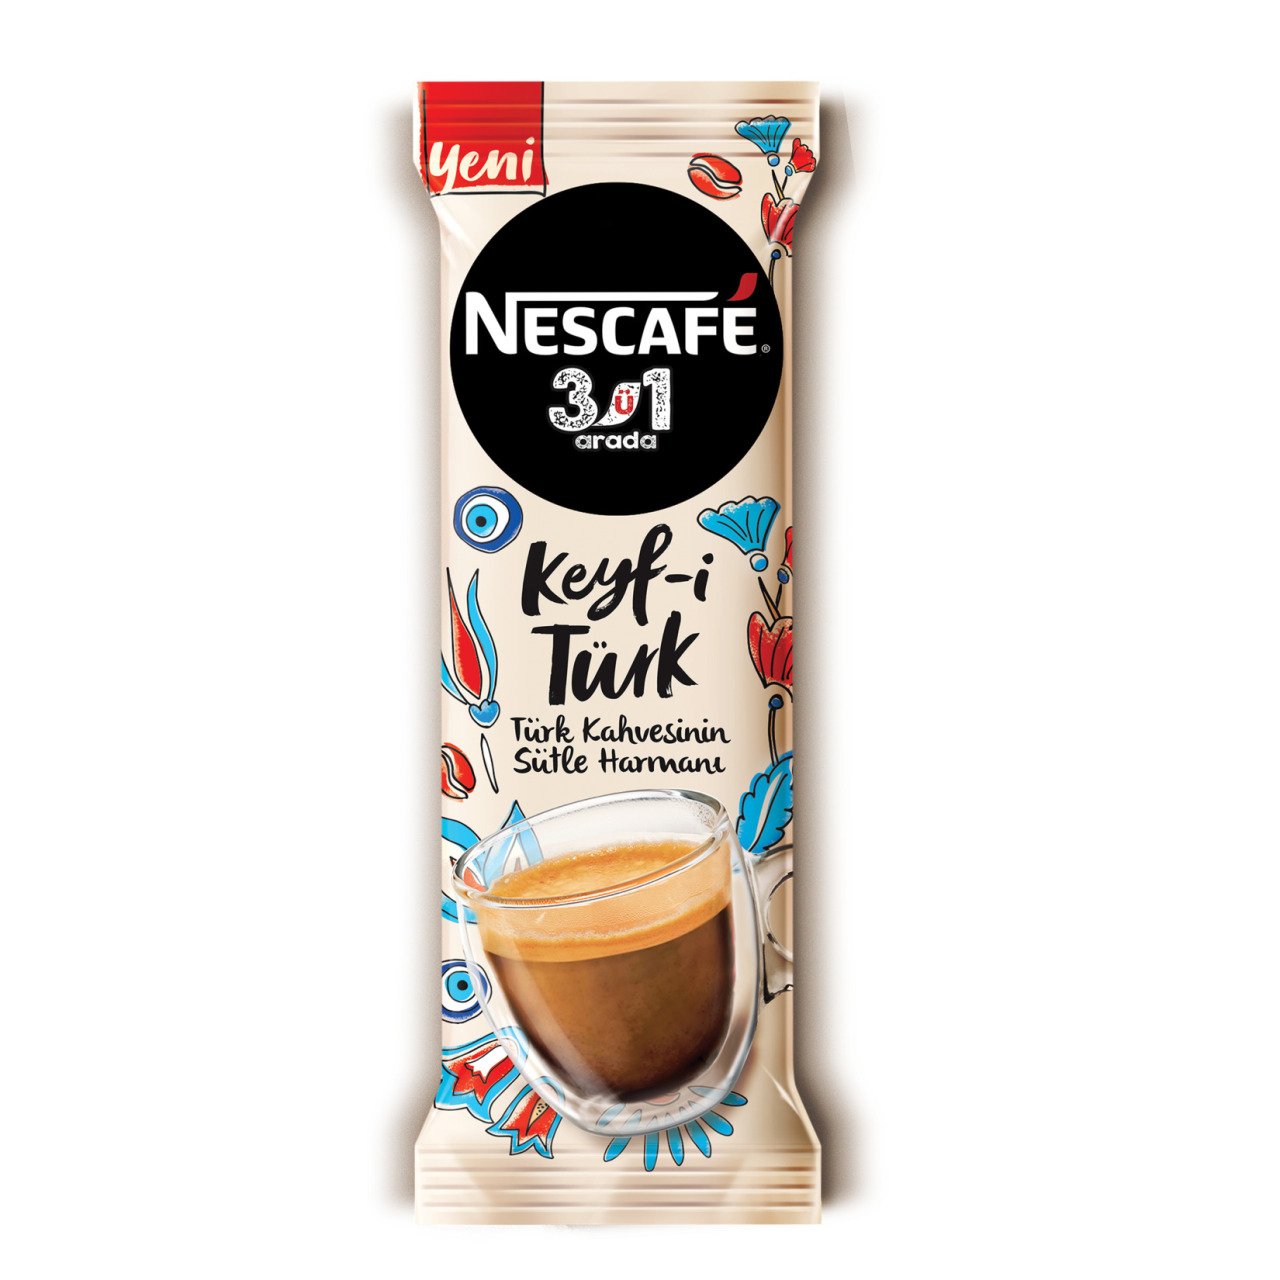 Nescafe 3ü1 arada keyf-i türk x 24 adet